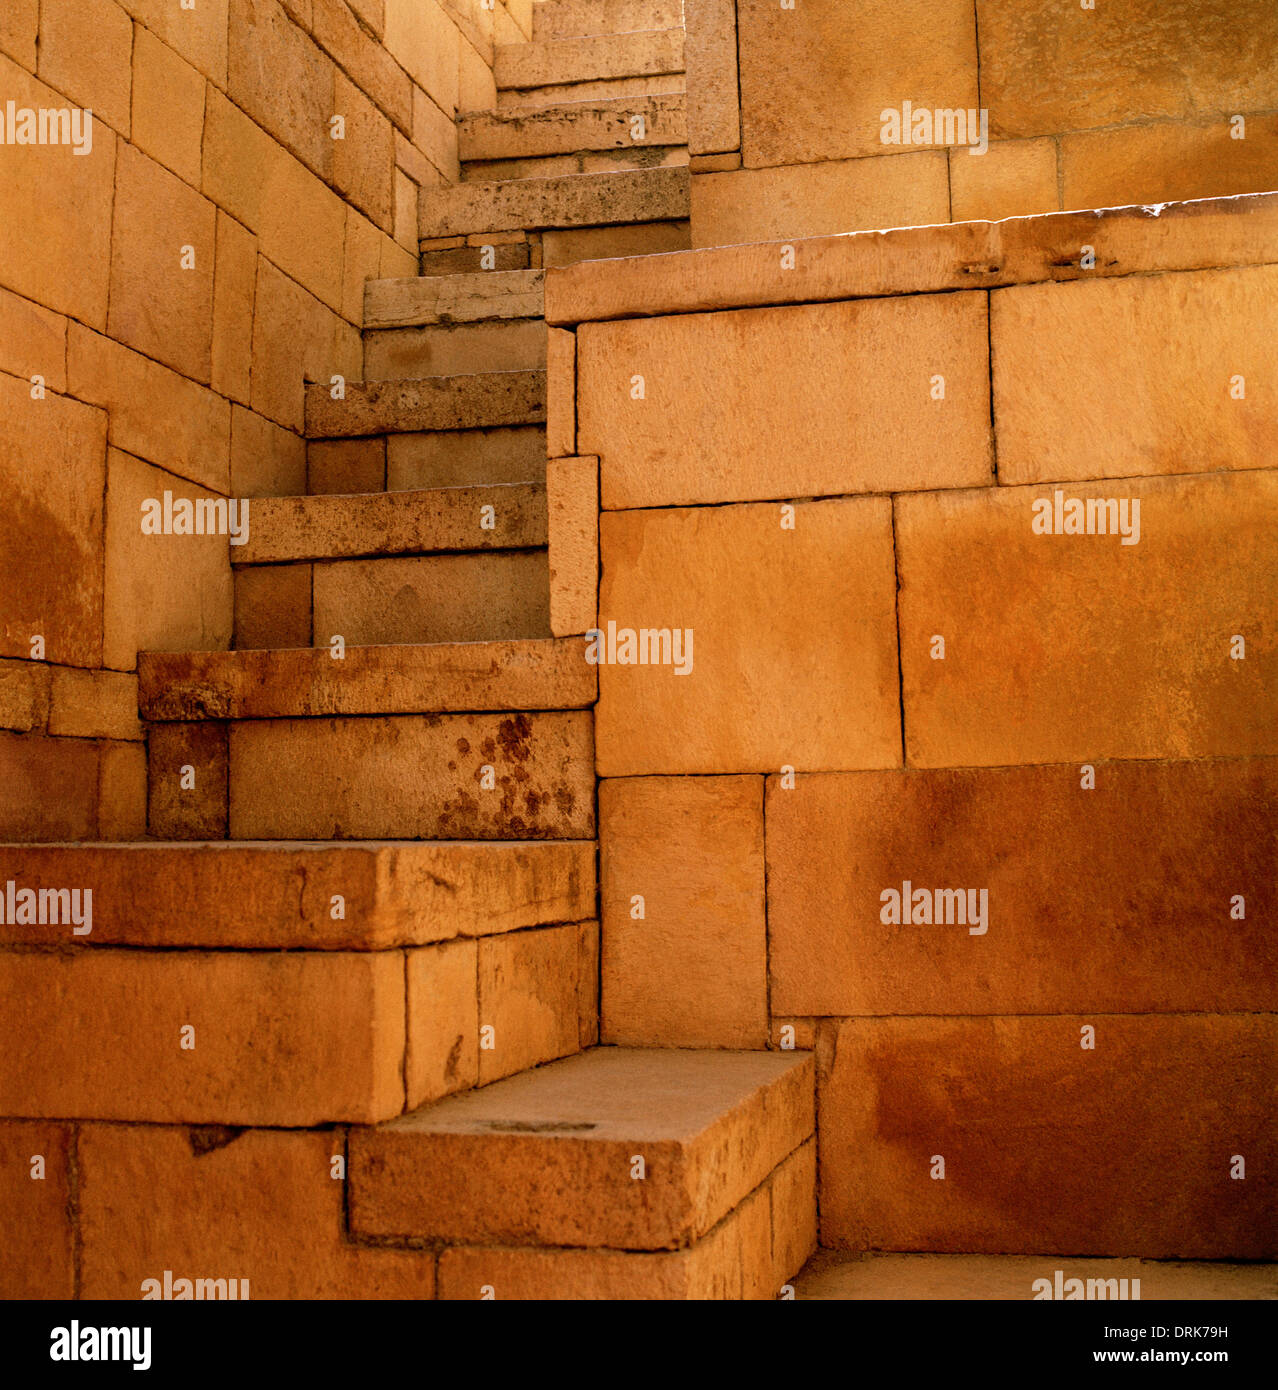 Escalier en pierre dans la région de Jaisalmer au Rajasthan en Inde en Asie du Sud. Mégalithe Architecture Histoire Ancienne Maçonnerie Construction escalier historique billet Banque D'Images